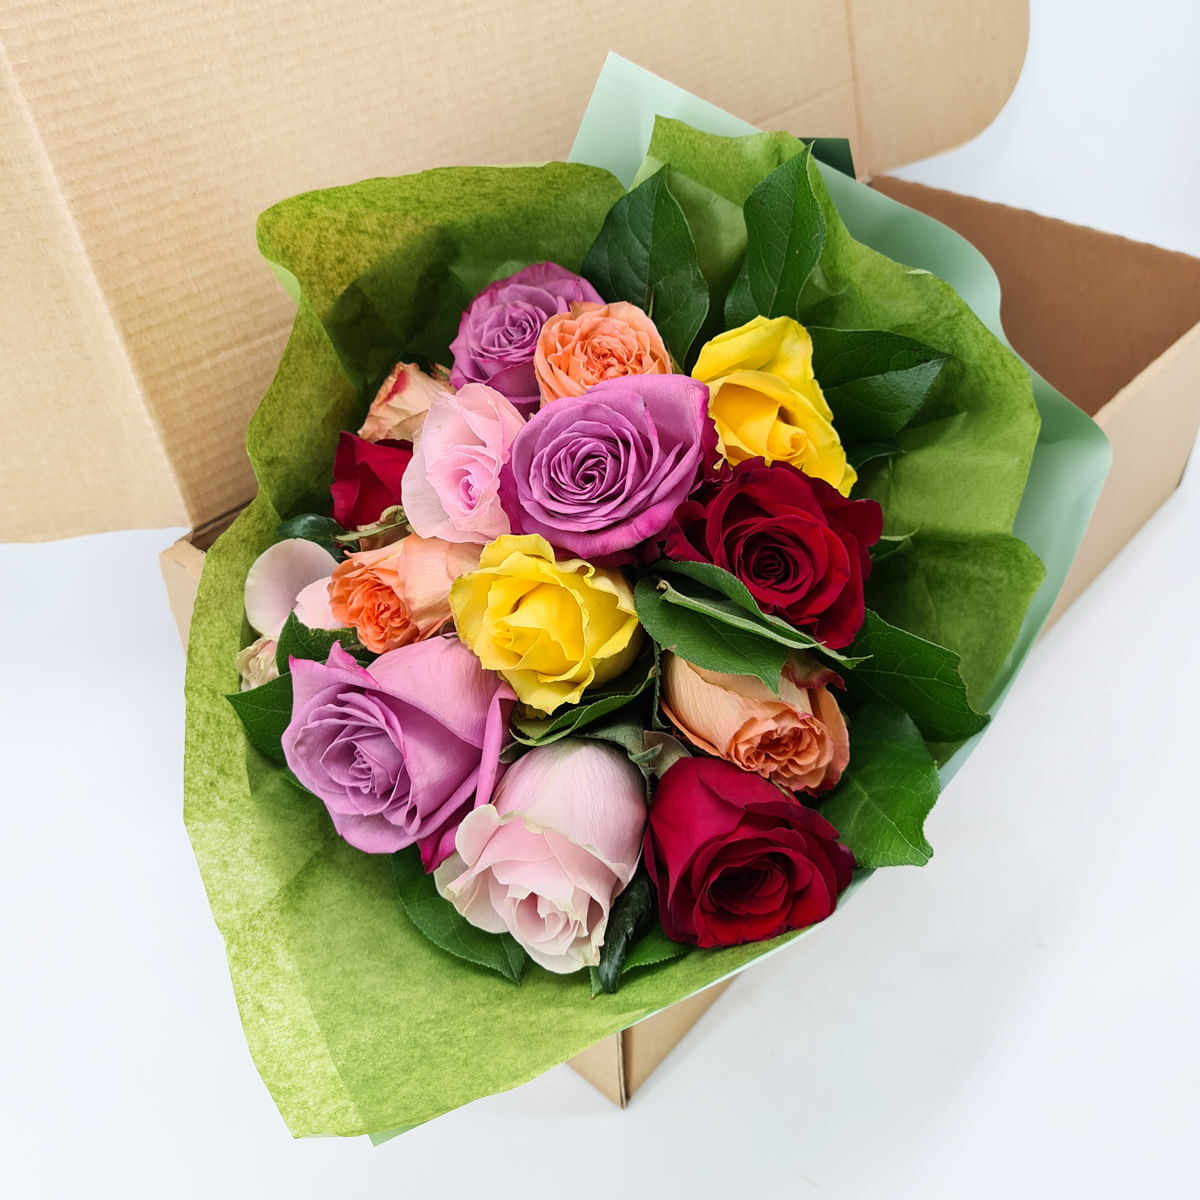 Buchet de 15 trandafiri multicolori in cutie